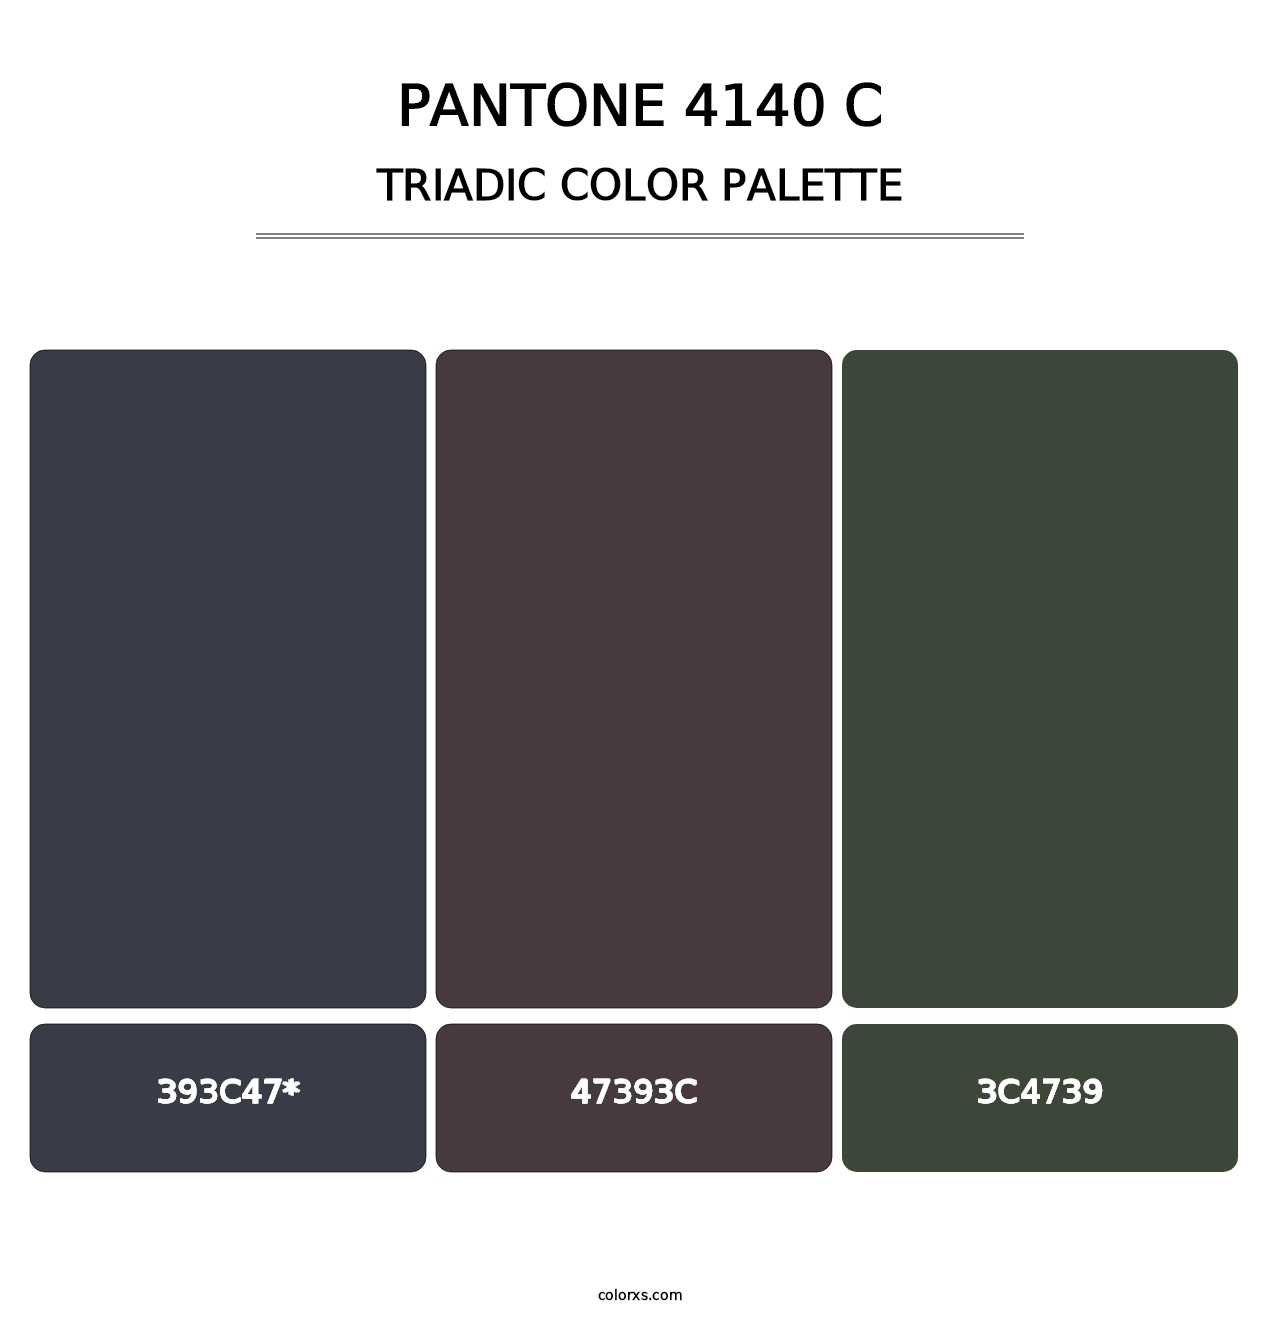 PANTONE 4140 C - Triadic Color Palette